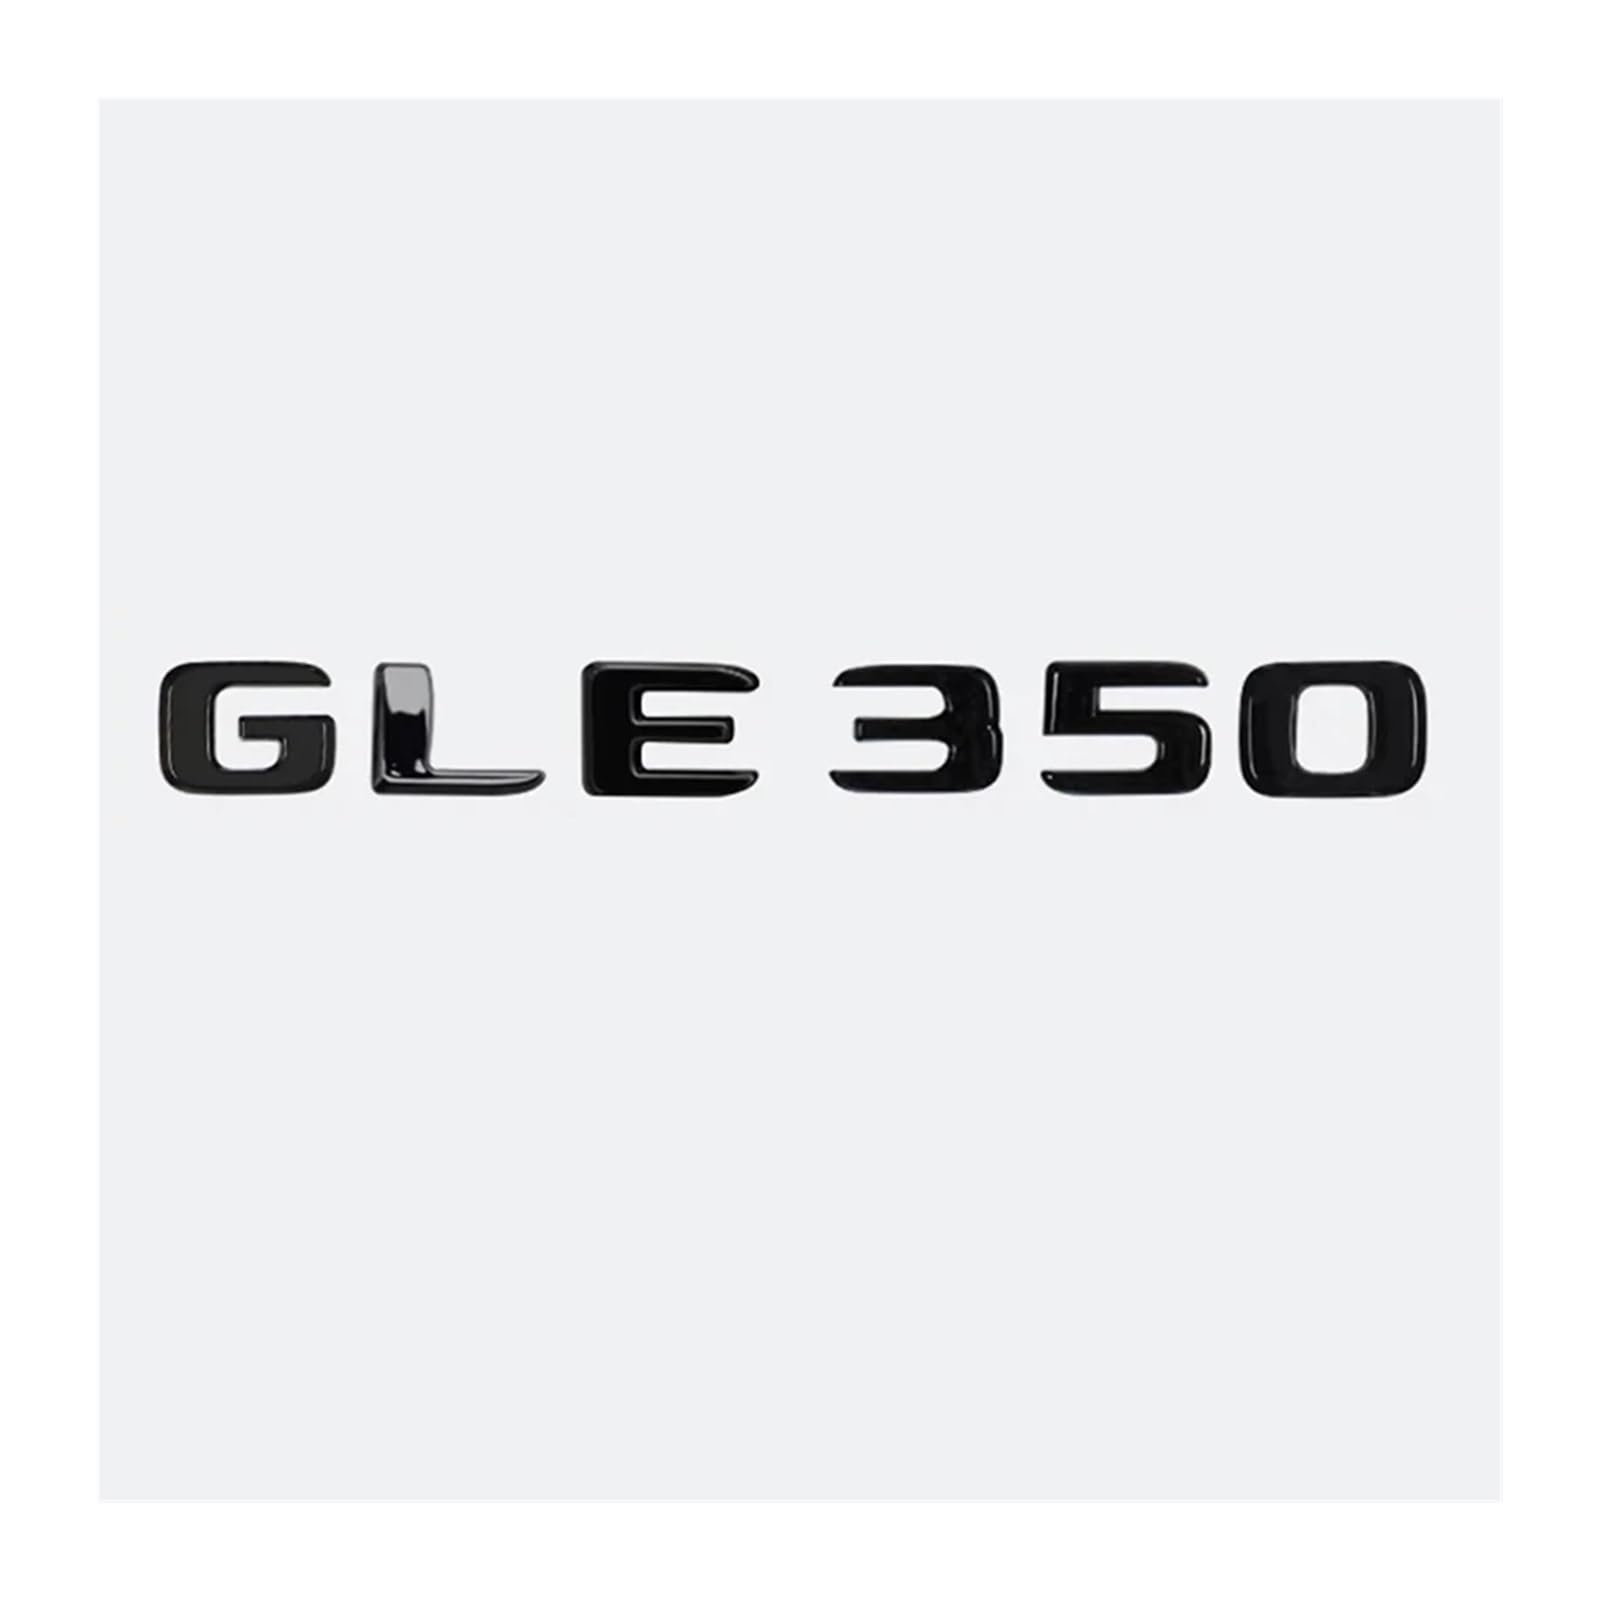 AQXYWQOL Auto ABS Kofferraum Buchstaben Logo Abzeichen Emblem Aufkleber Styling Aufkleber kompatibel mit GLE GLE53 GLE350 GLE400 GLE450 W166 W167 4 Matic Farbe ist konstant, verblasst nicht und beschä von AQXYWQOL